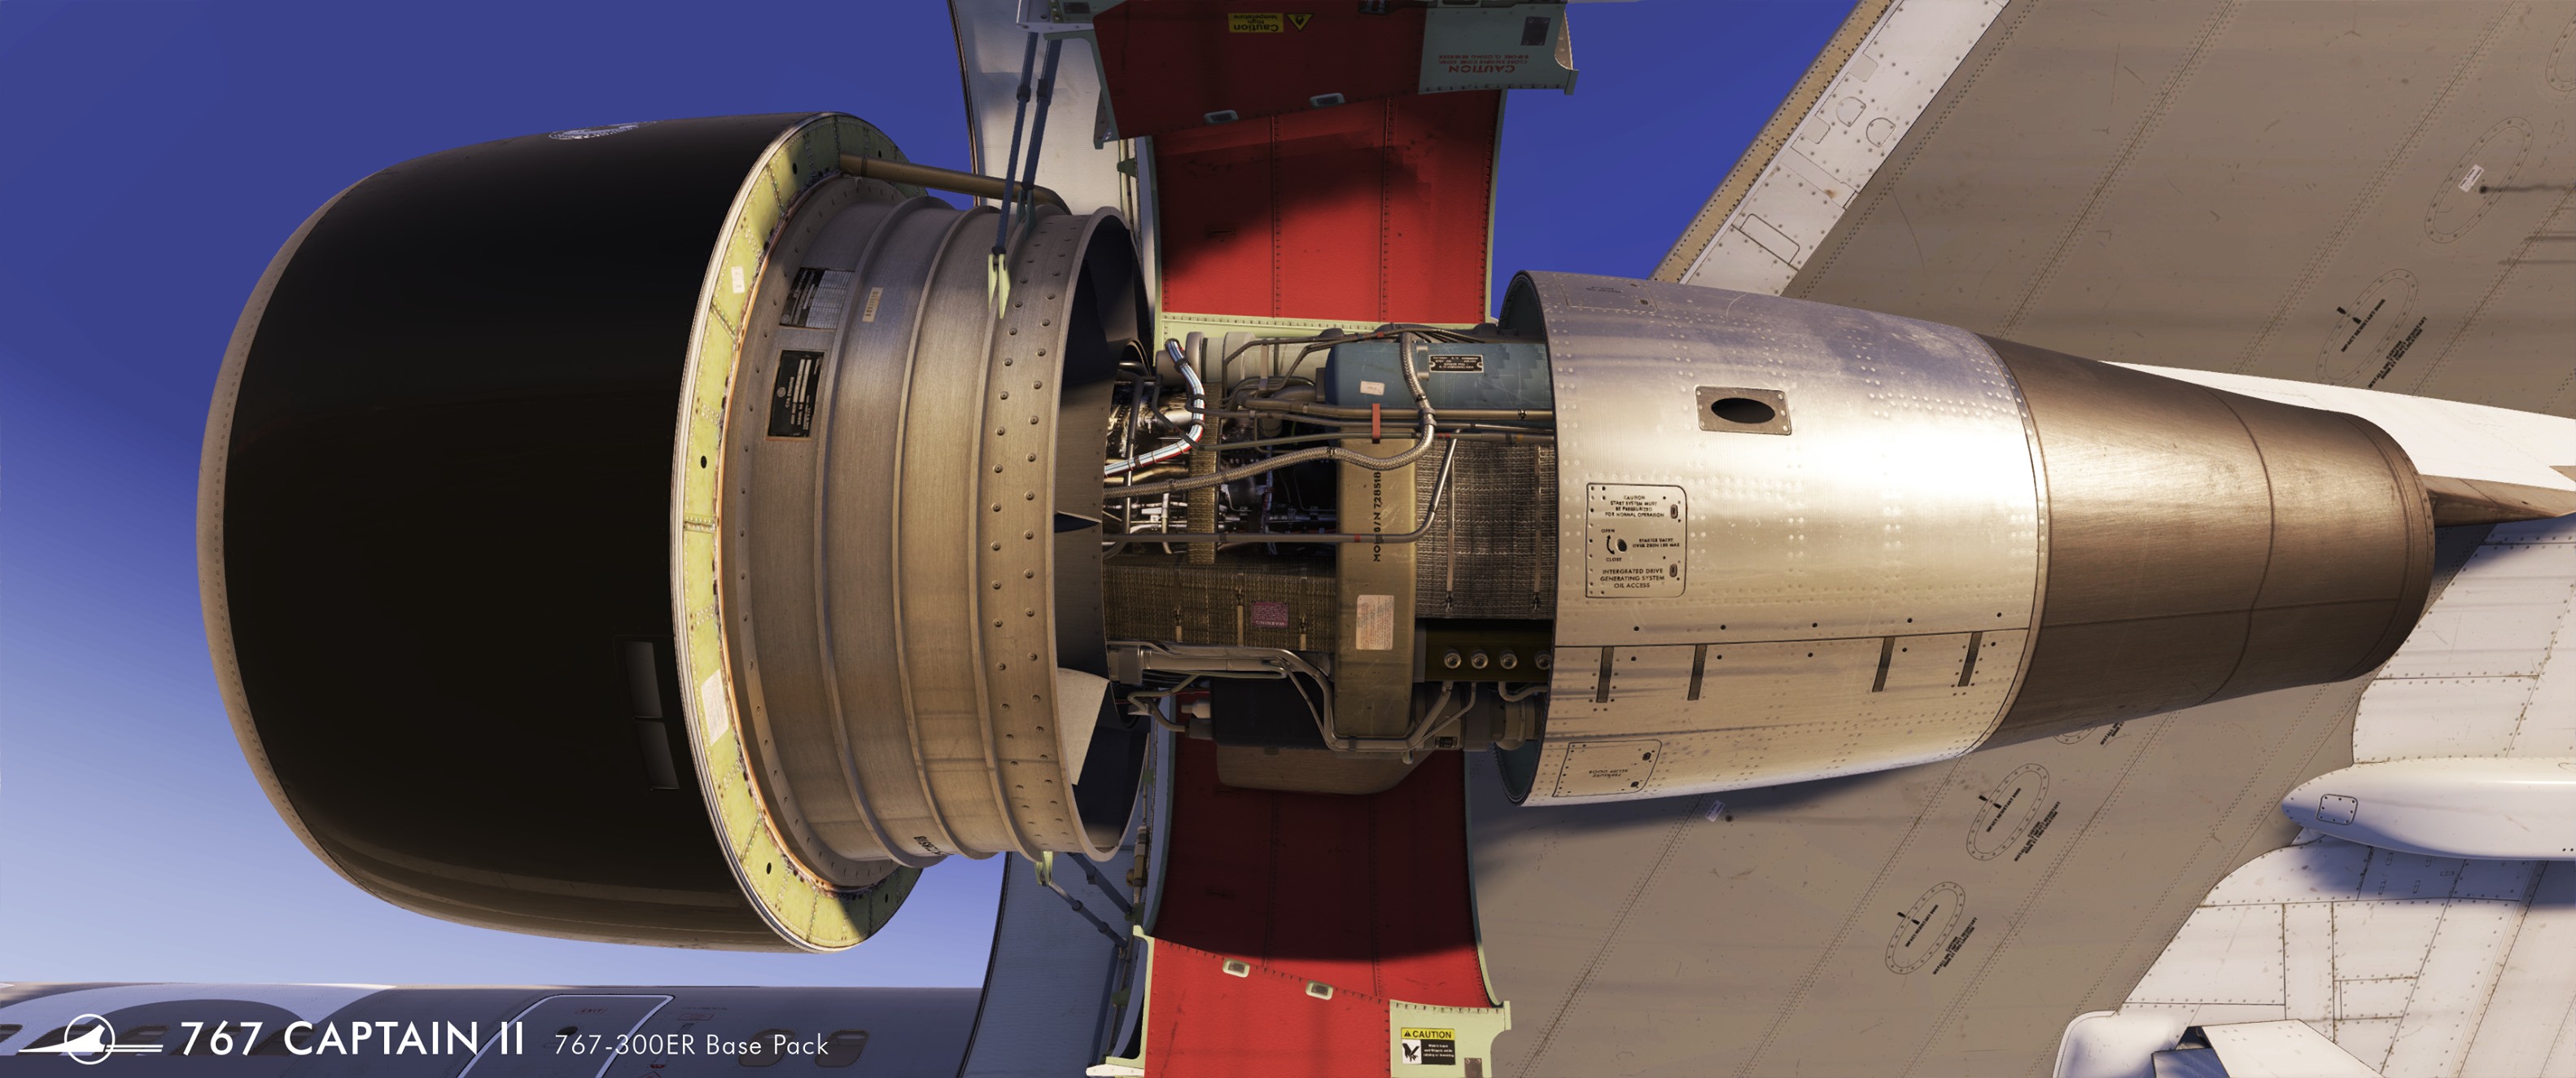 Captain Sim Announces 767 Expansion Plans, Confirms MSFS Plans